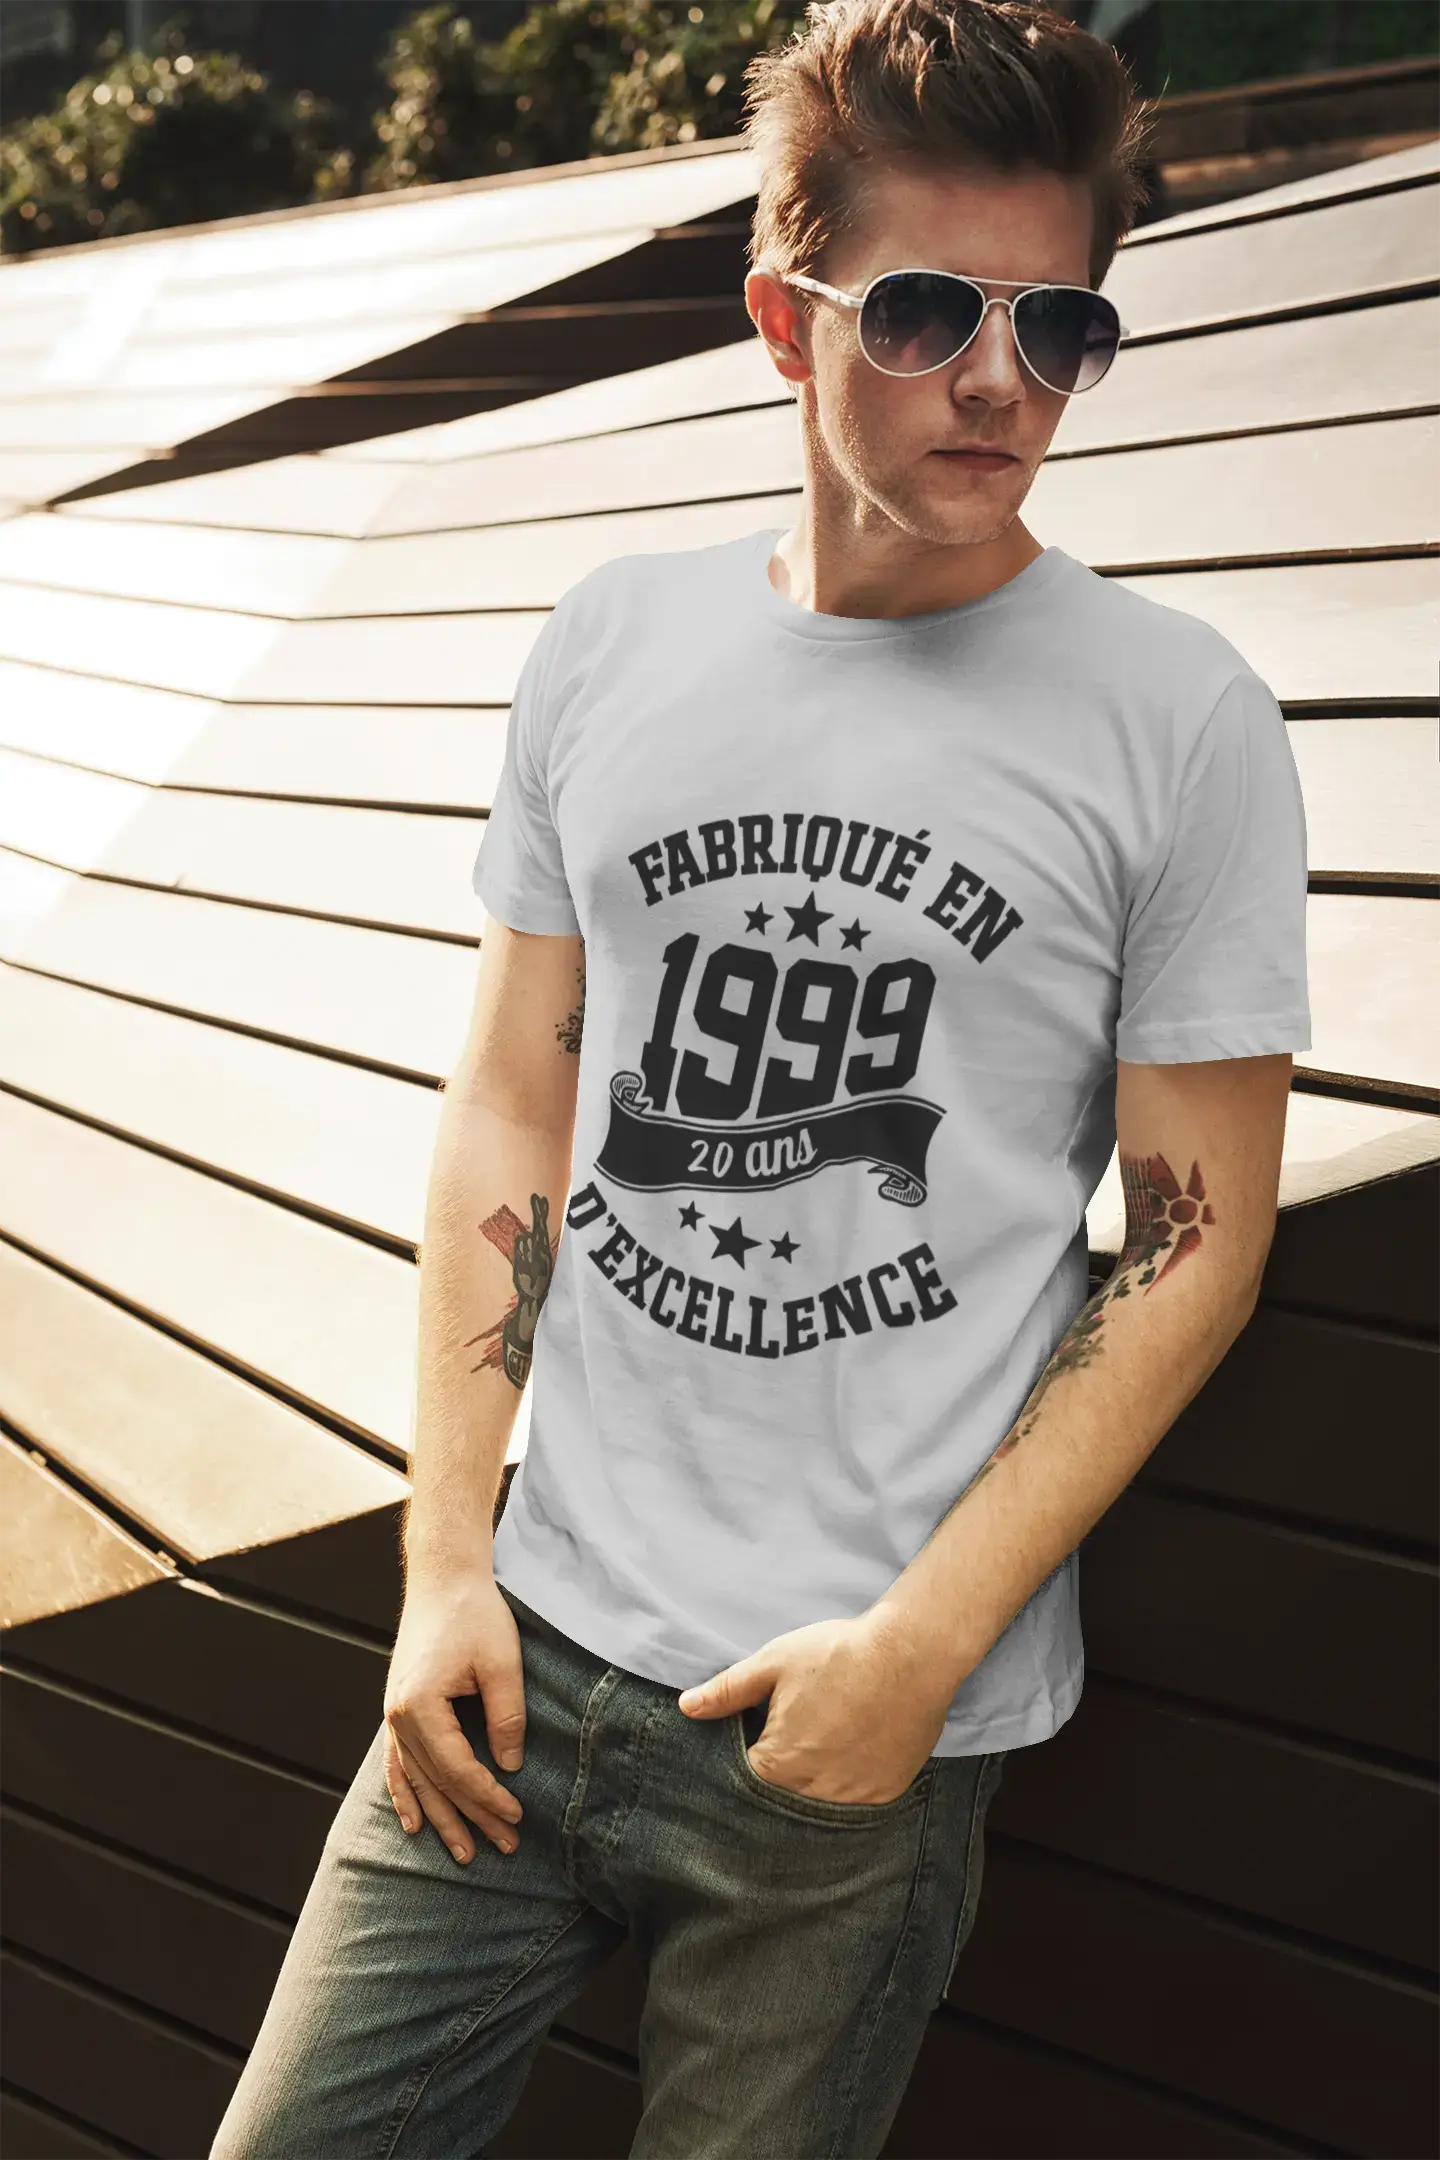 ULTRABASIC – Hergestellt im Jahr 1999, 20 Jahre alt. Geniales weißes Unisex-T-Shirt